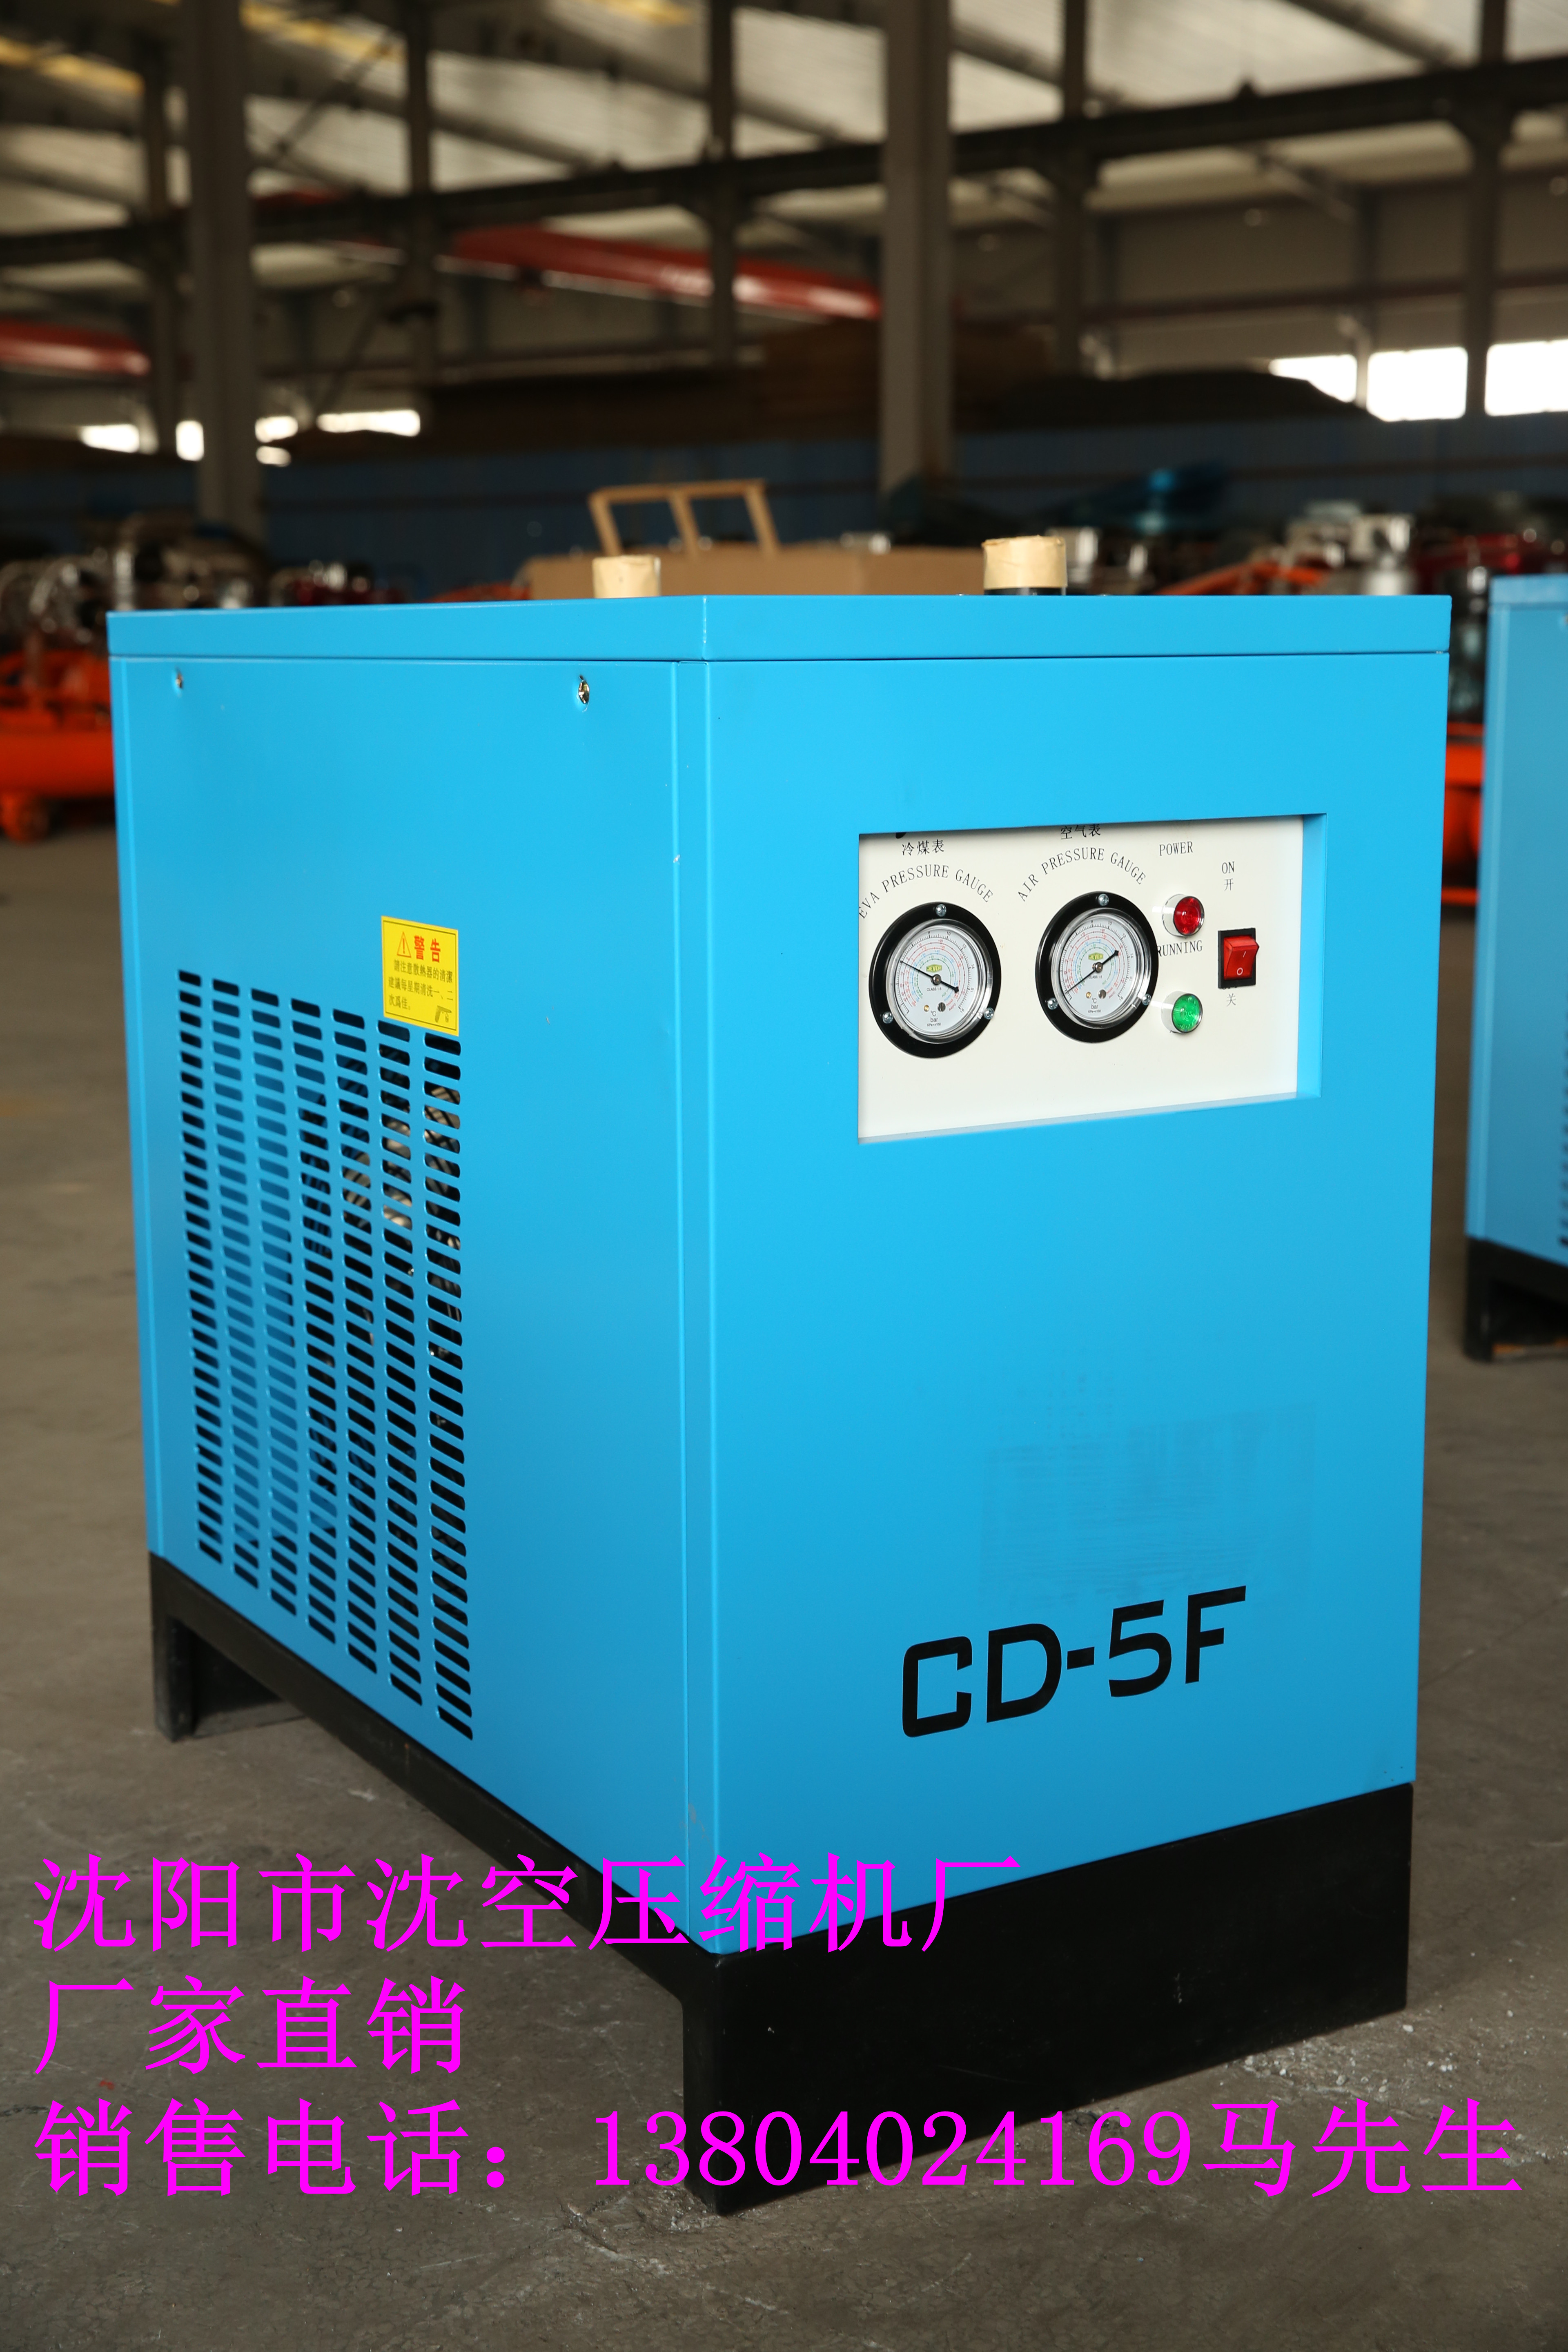 沈阳沈空螺杆机空压机冷冻式干燥机   螺杆压缩机配件  活塞式压缩机 SKCD-5F压缩机冷冻式干燥机